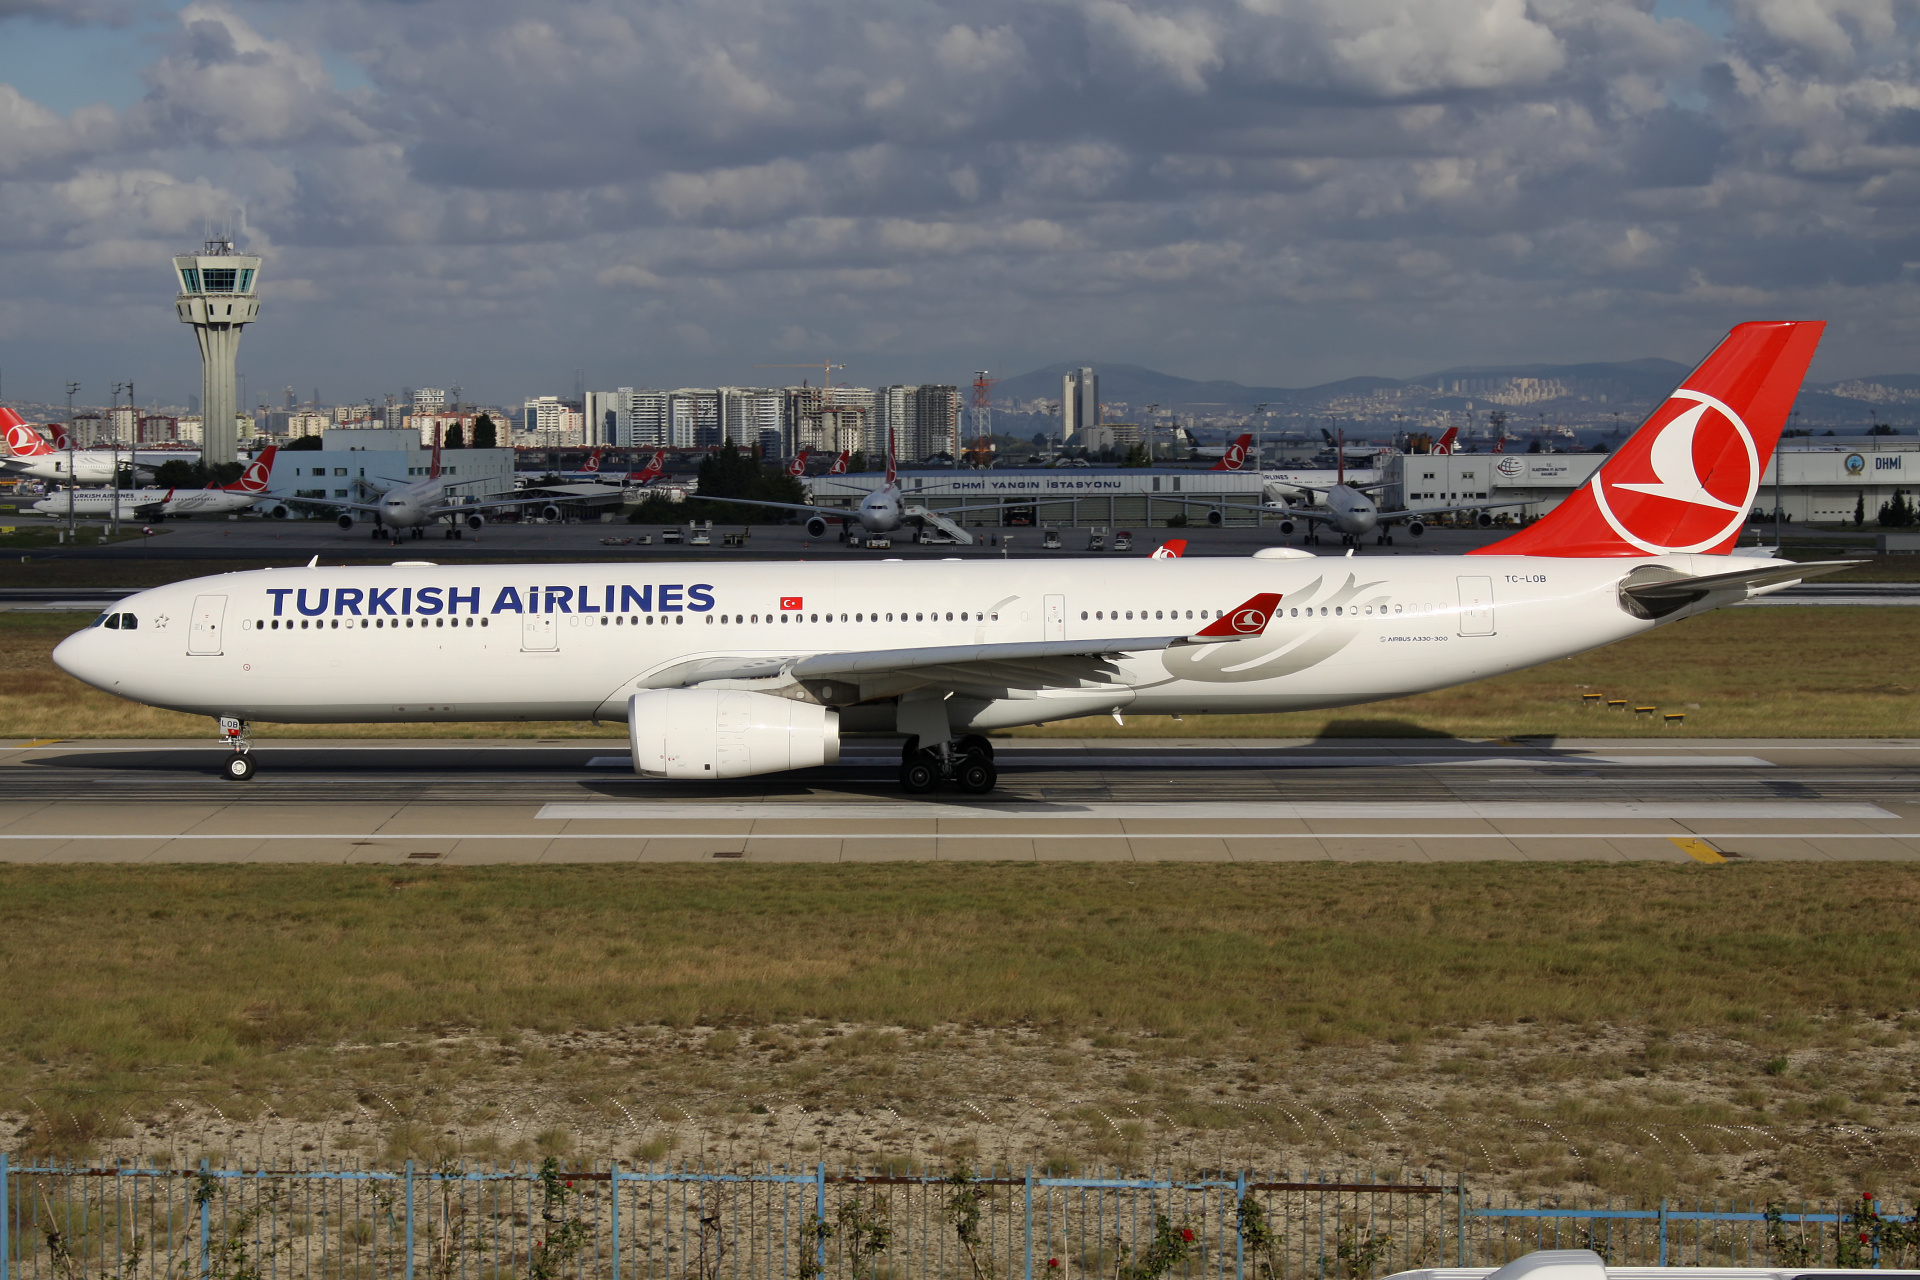 TC-LOB (Samoloty » Port Lotniczy im. Atatürka w Stambule » Airbus A330-300 » THY Turkish Airlines)